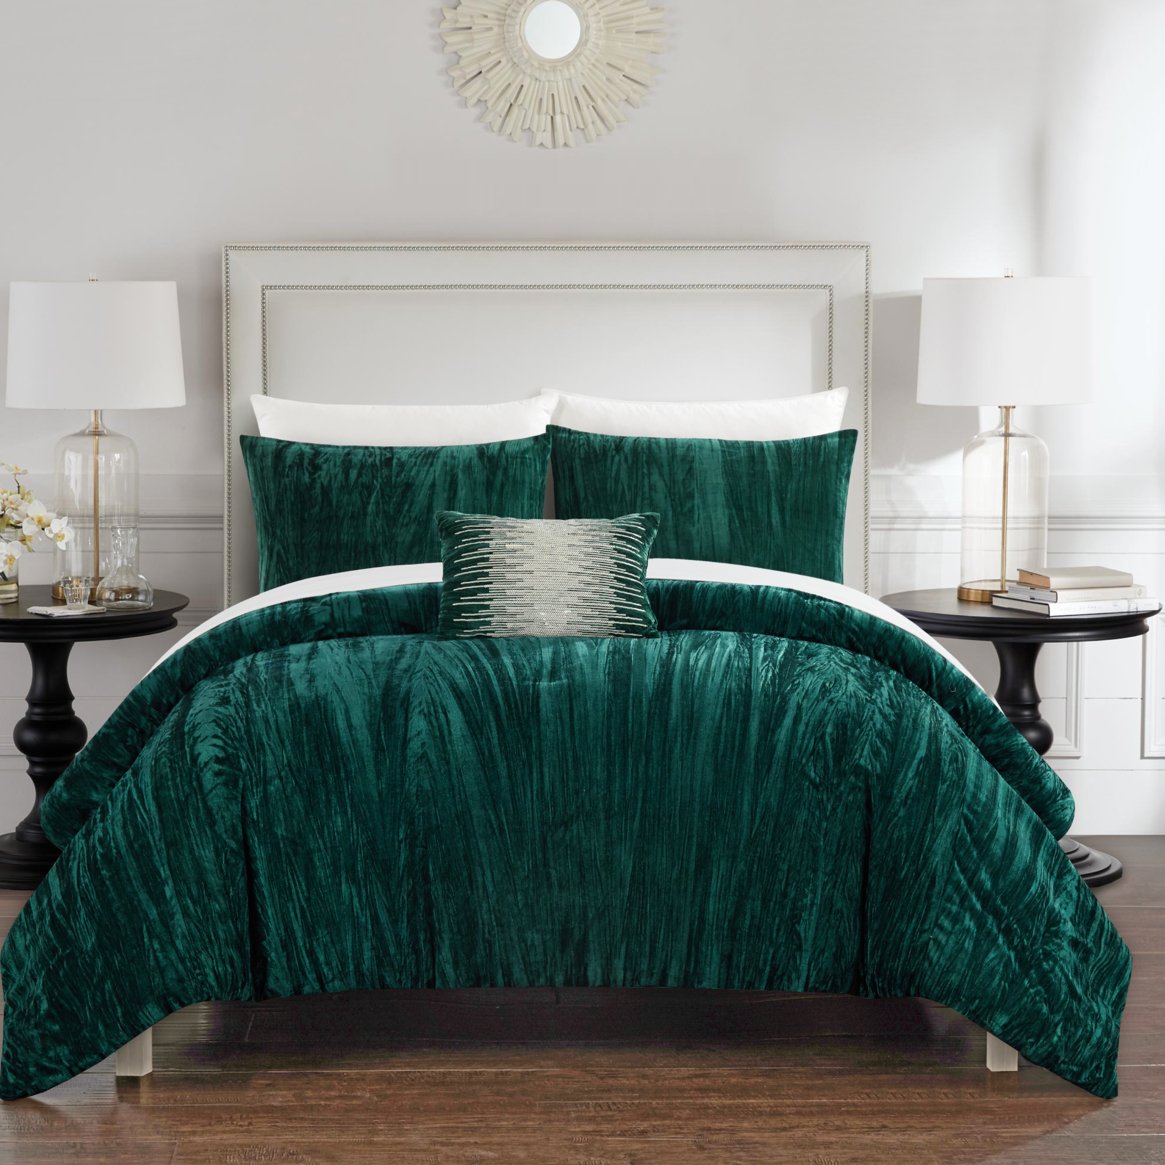 Merieta 8 Piece Comforter Set Crinkle Crushed Velvet Bed In A Bag Bedding - Green, Queen